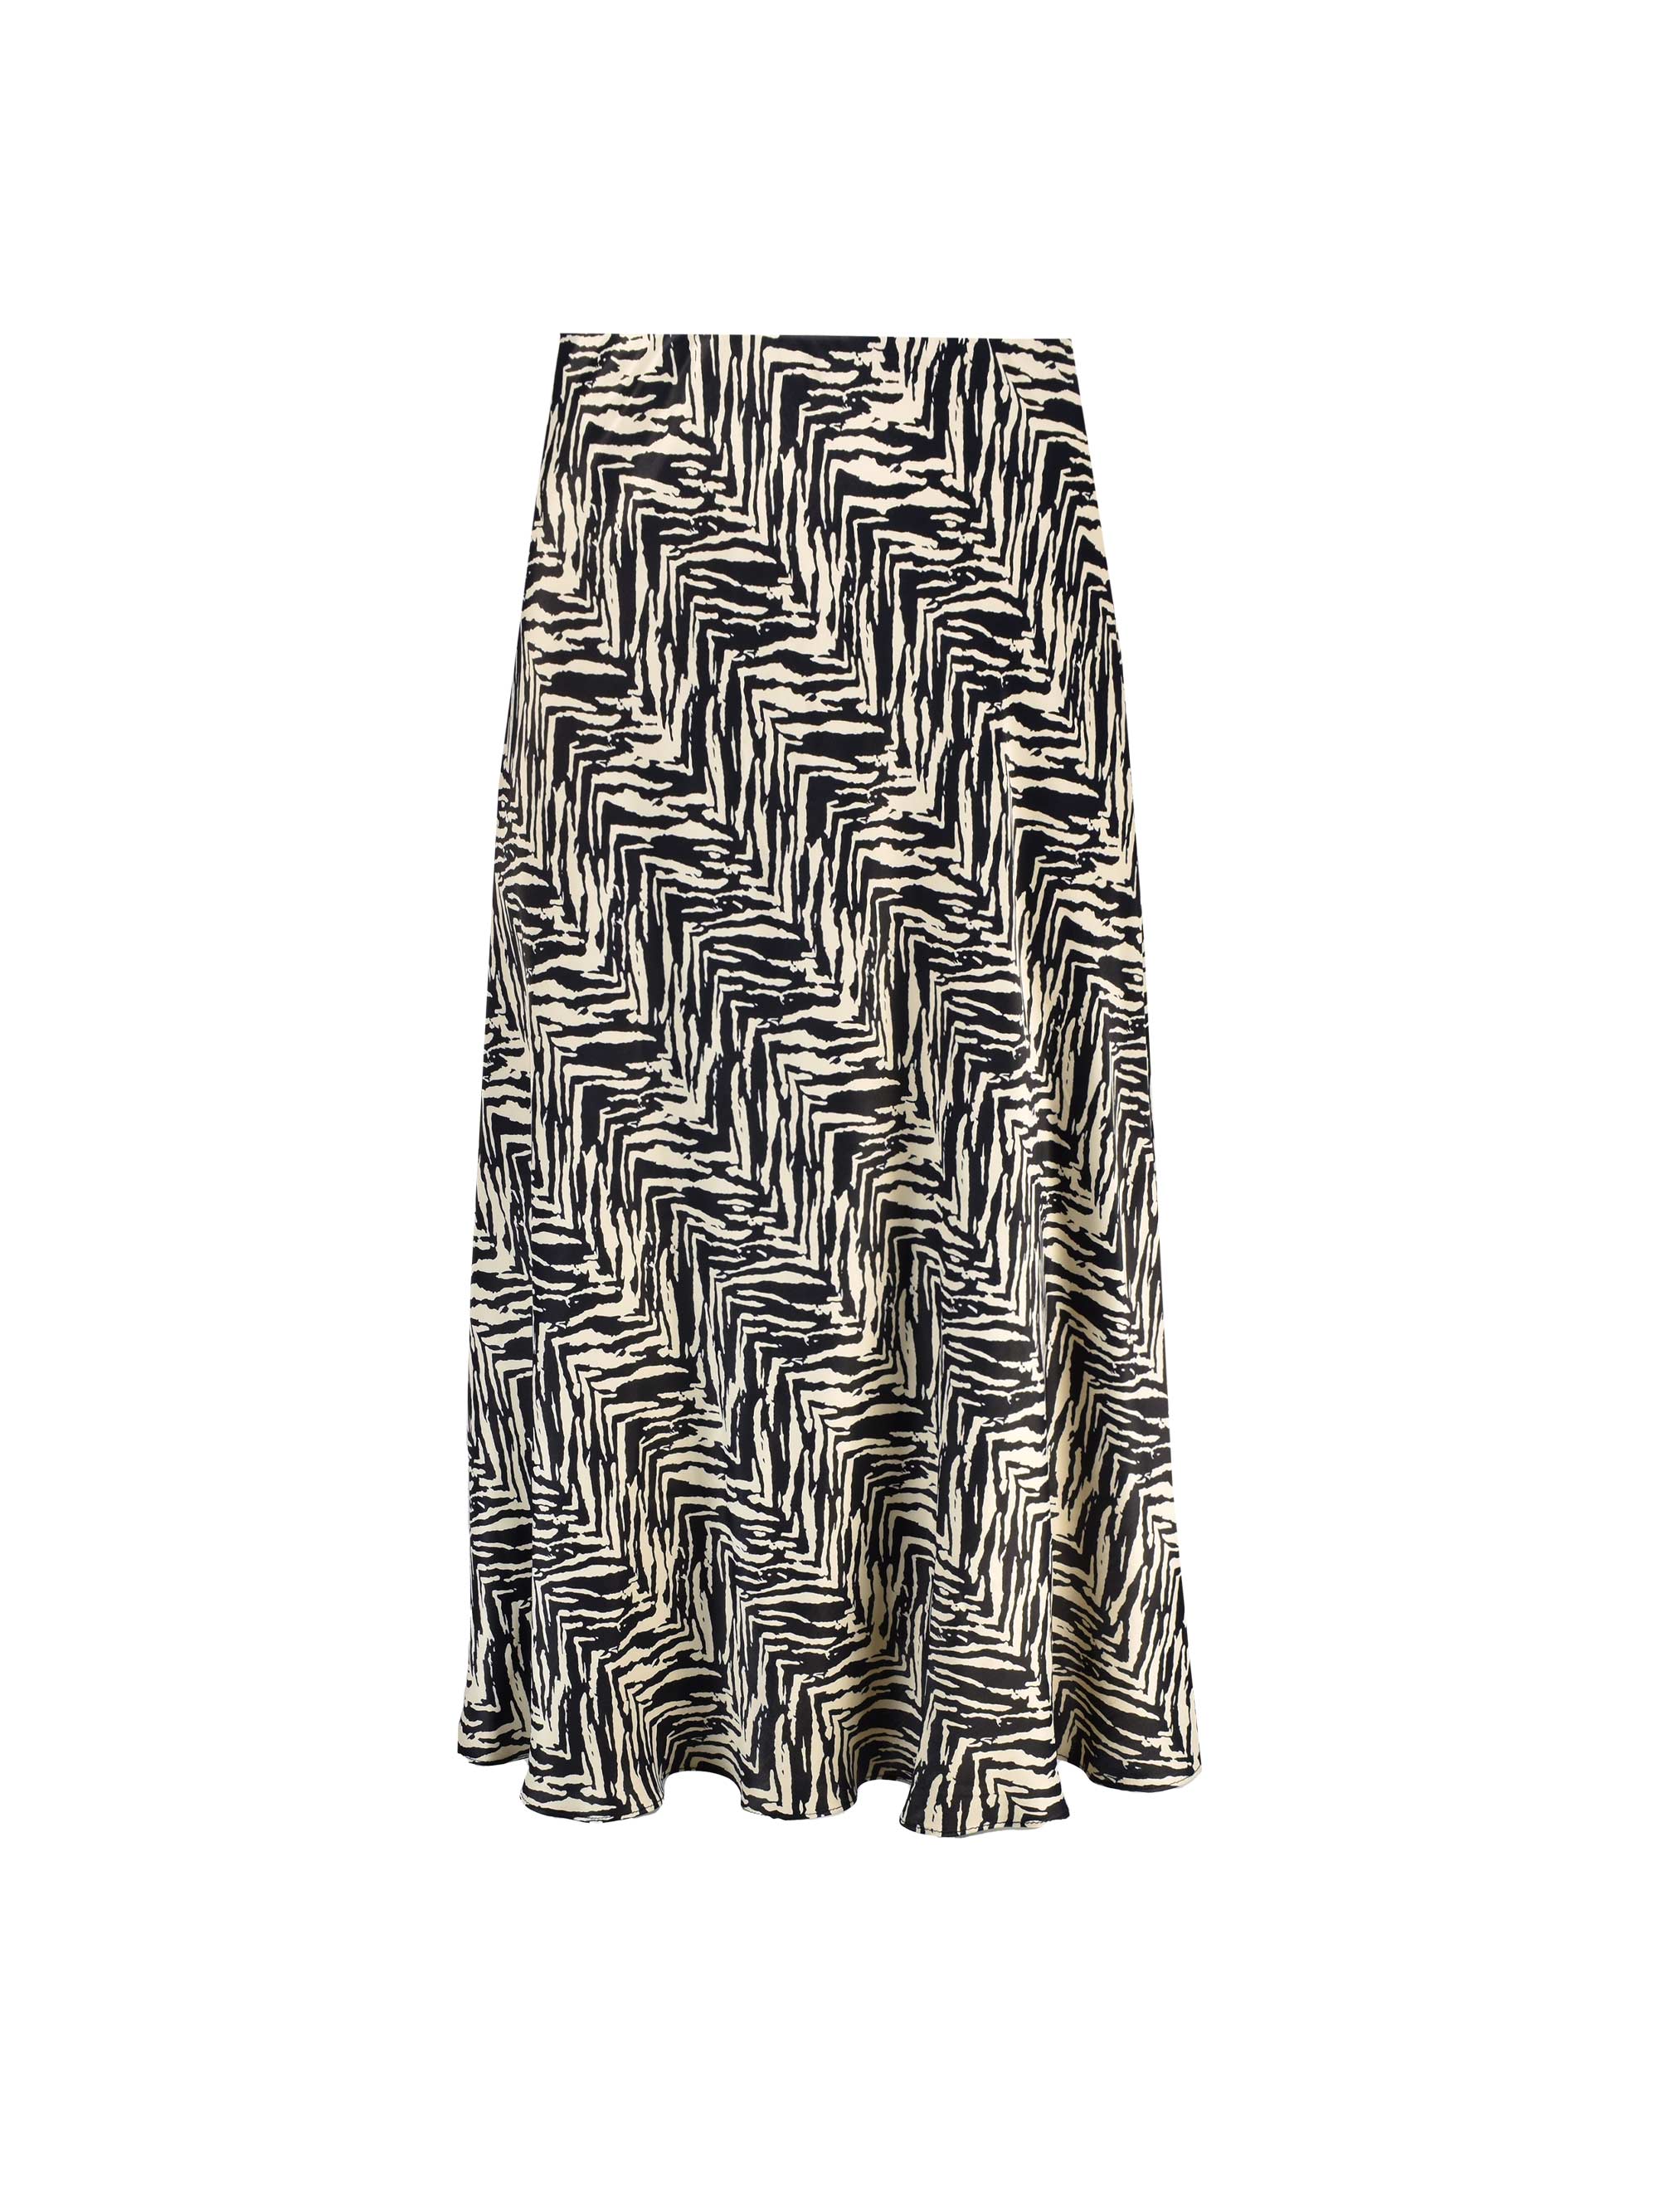 Mono Zebra Print Bias Cut Skirt